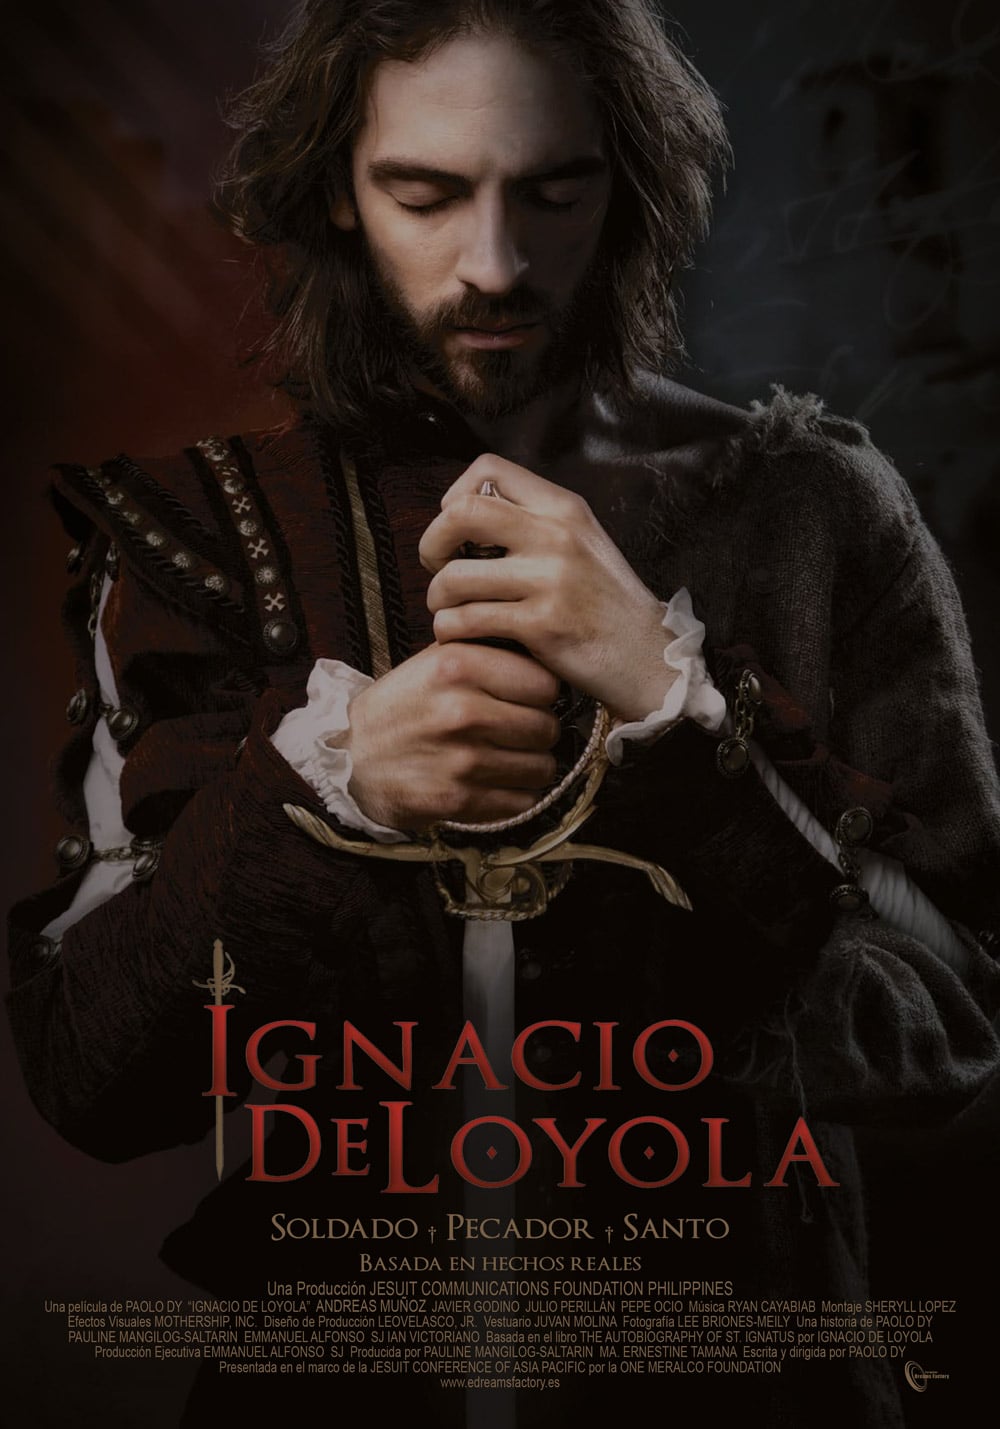 Ignacio de Loyola